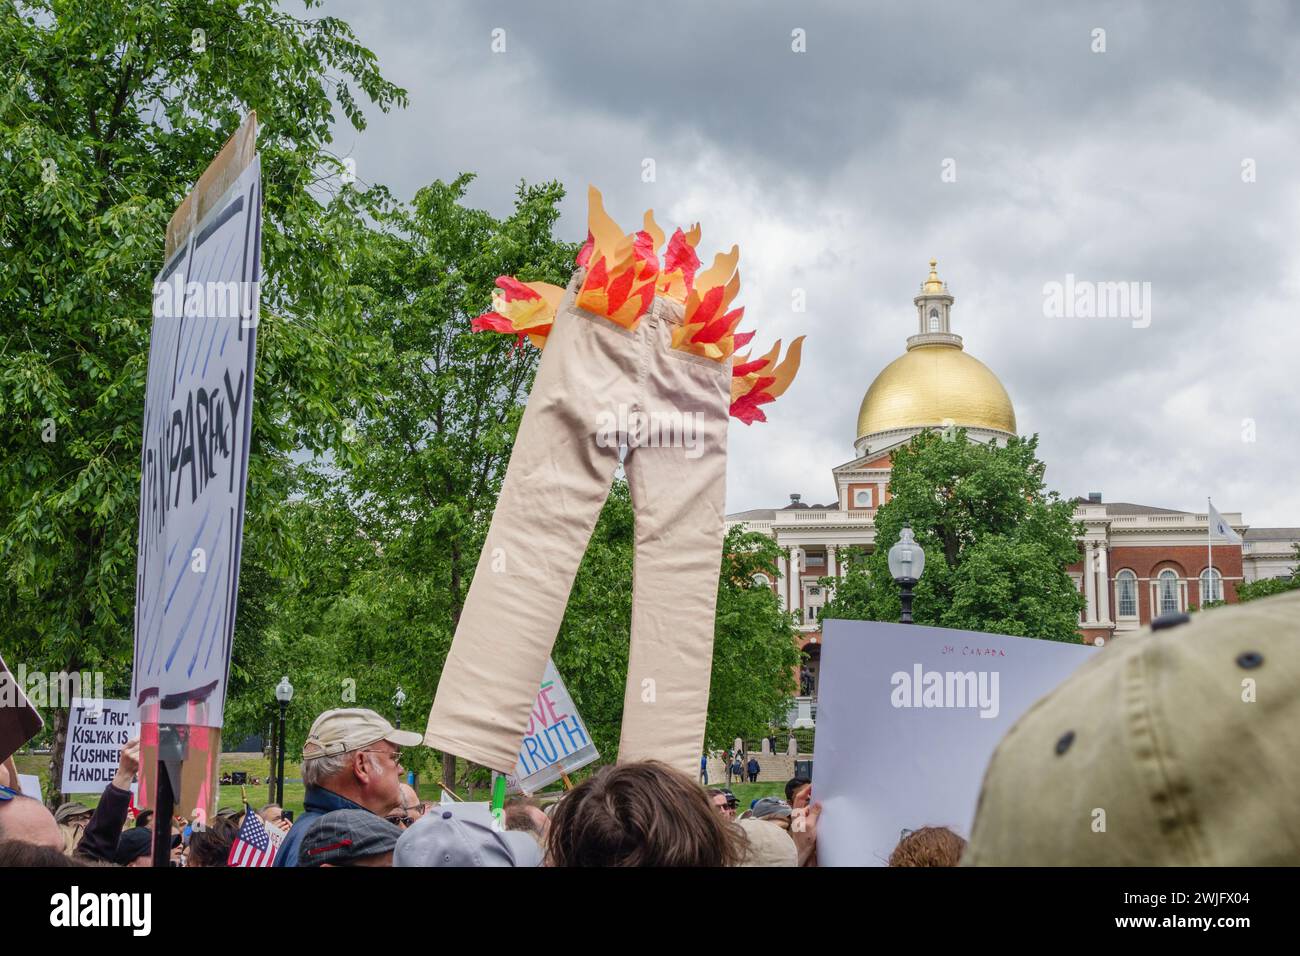 Boston, ma, USA - 3 giugno 2017. I manifestanti alla marcia anti-Trump per la verità tengono dei segnali alla Boston State House. Il cartello in evidenza è "pantaloni in fiamme". Foto Stock